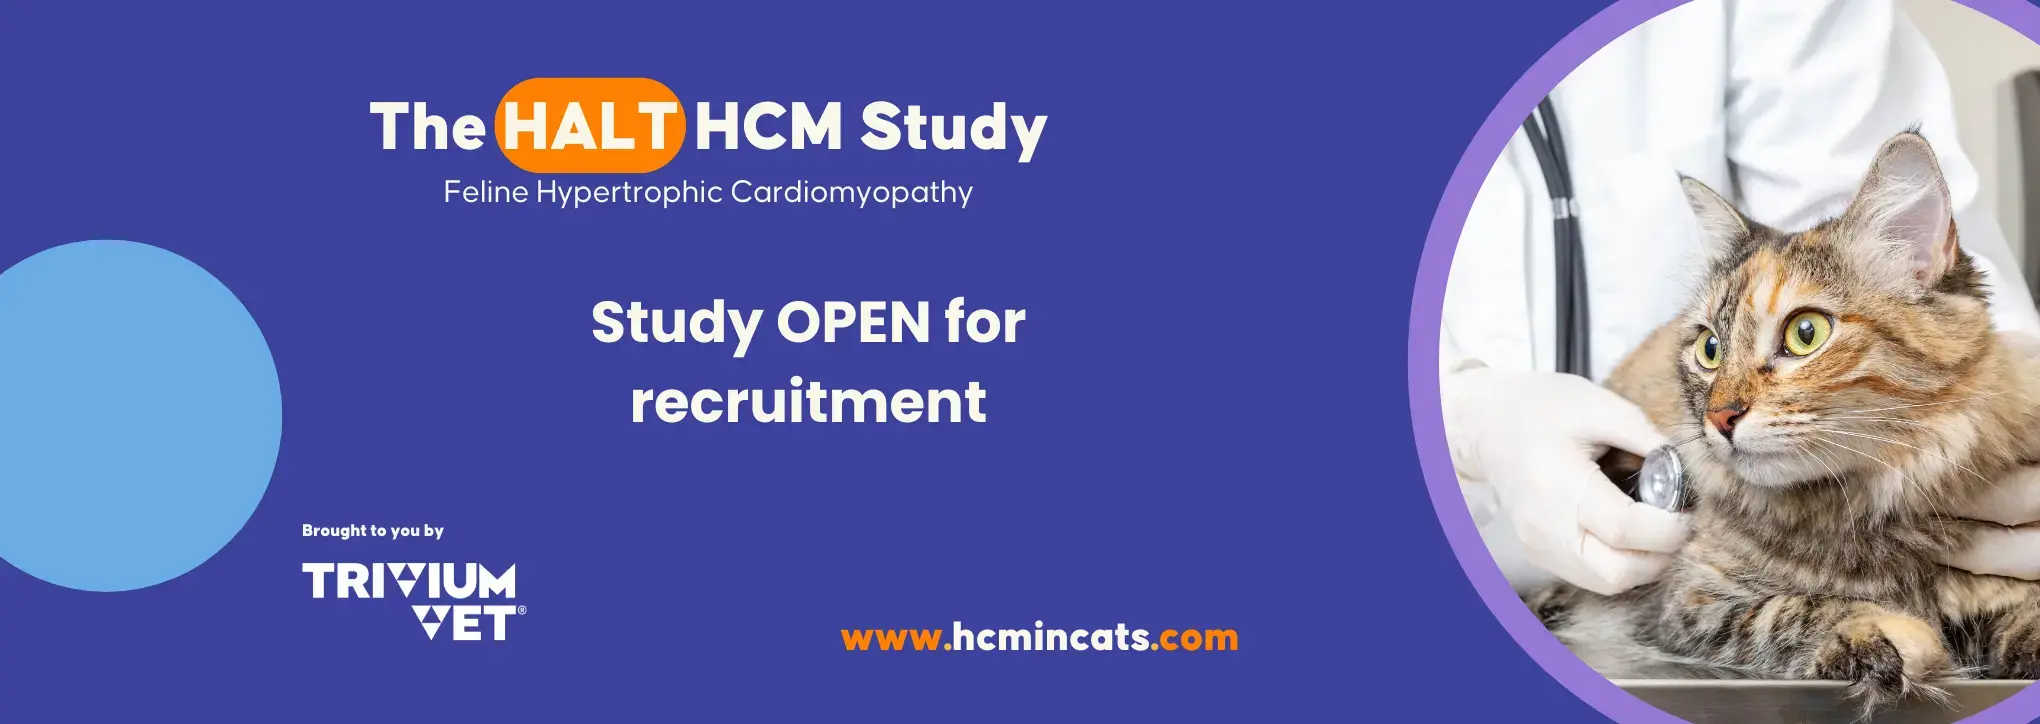 The HALT HCM Study open for recruitment